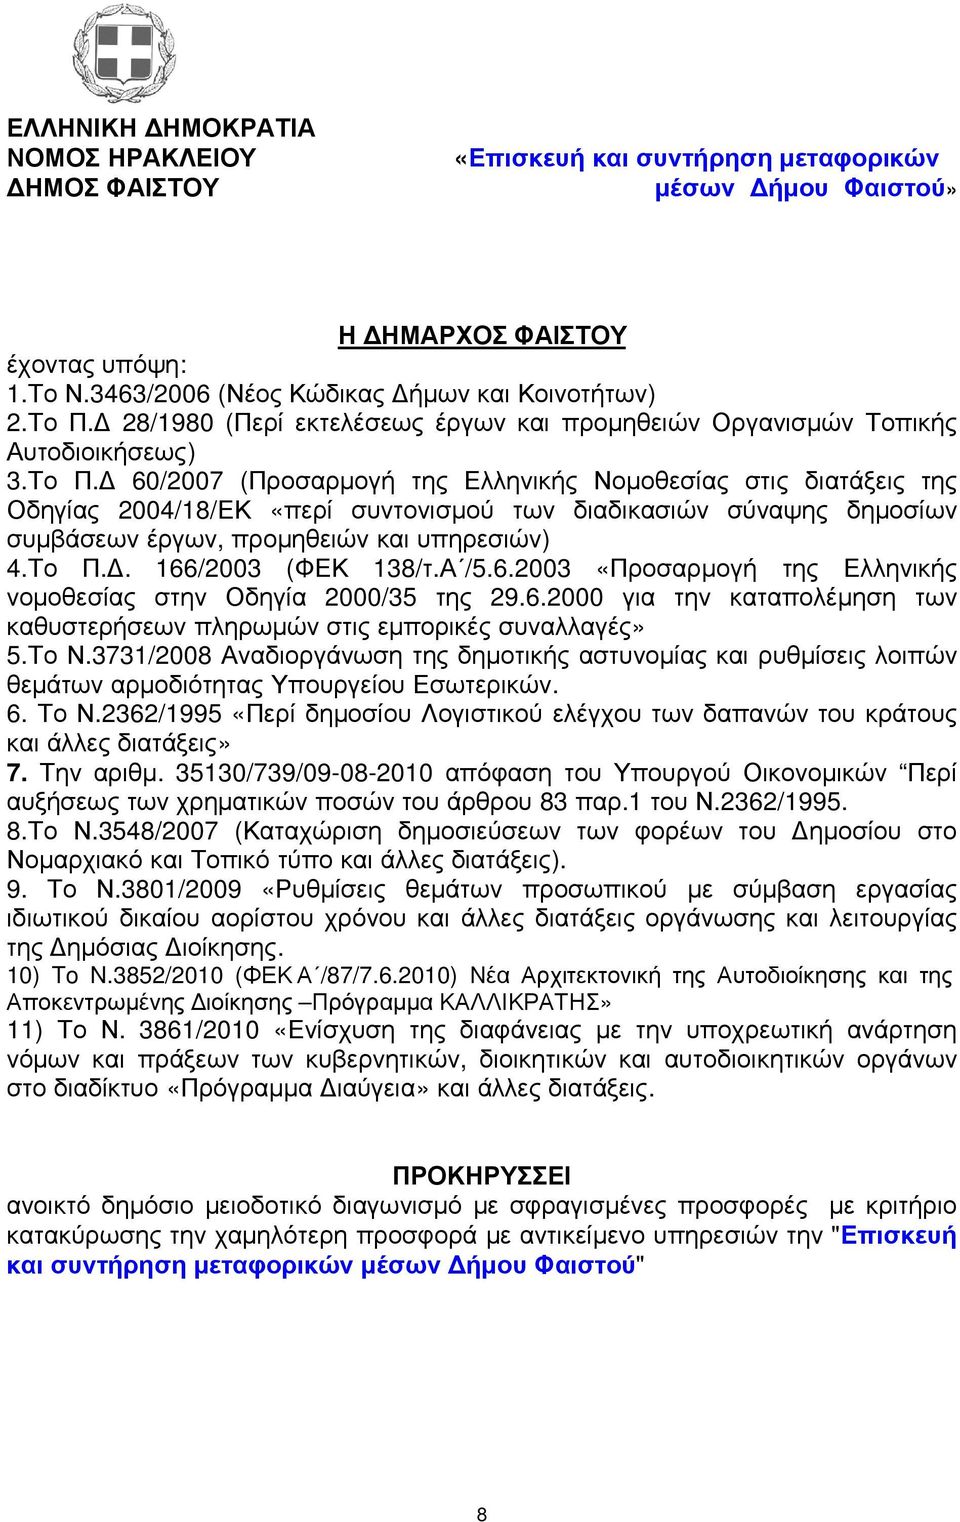 60/27 (Προσαρµογή της Ελληνικής Νοµοθεσίας στις διατάξεις της Οδηγίας 24/18/ΕΚ «περί συντονισµού των διαδικασιών σύναψης δηµοσίων συµβάσεων έργων, προµηθειών και υπηρεσιών) 4.Το Π.. 166/23 (ΦΕΚ 138/τ.